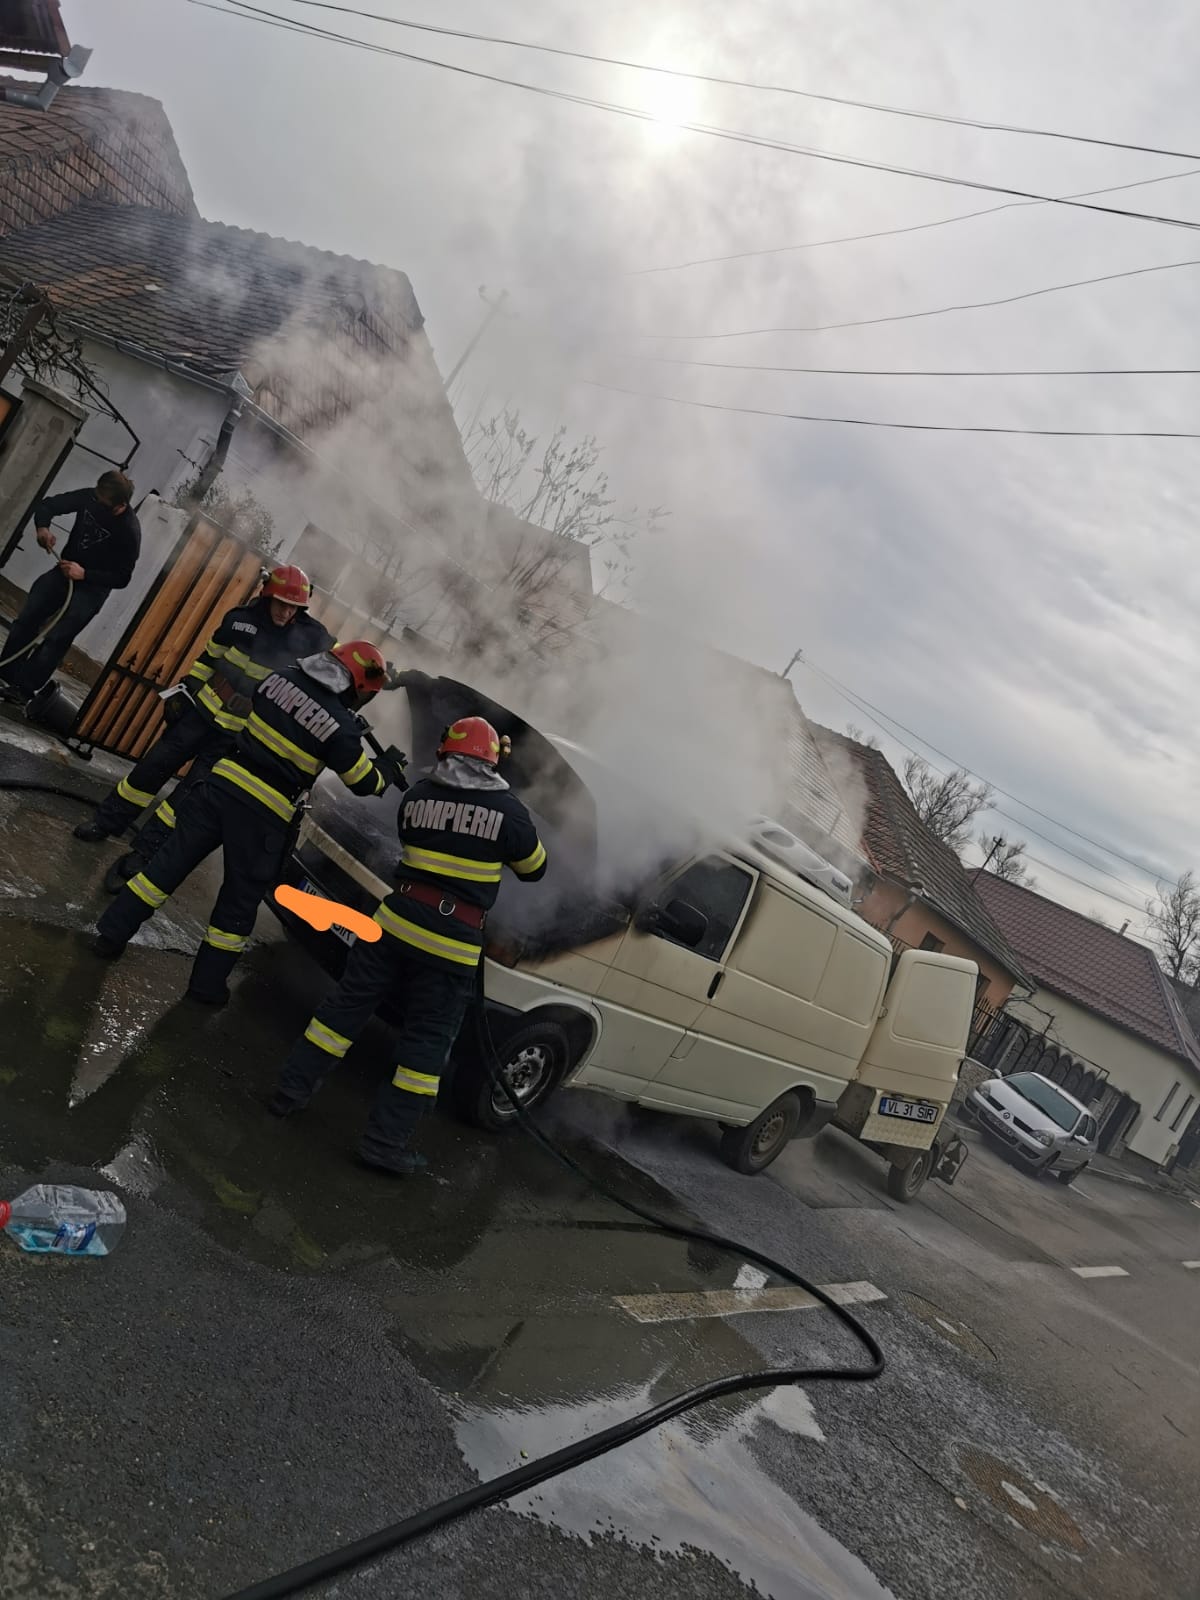 Pompierii militari ai Detașamentului Sibiu au fost solicitați să intervină de urgență în municipiul Sibiu, str. Prejbei pentru localizarea și lichidarea unui incendiu izbucnit la compartimentul motor al unui microbuz transport marfă staționat, fără victime. La fața s-a intervenit prompt pentru stingerea incendiului. A ars compartimentul motor fără a se propaga la întregul microbuz. Cauza probabilă de izbucnire a incendiului a fost determinată de producerea unui scurtcircuit electric.